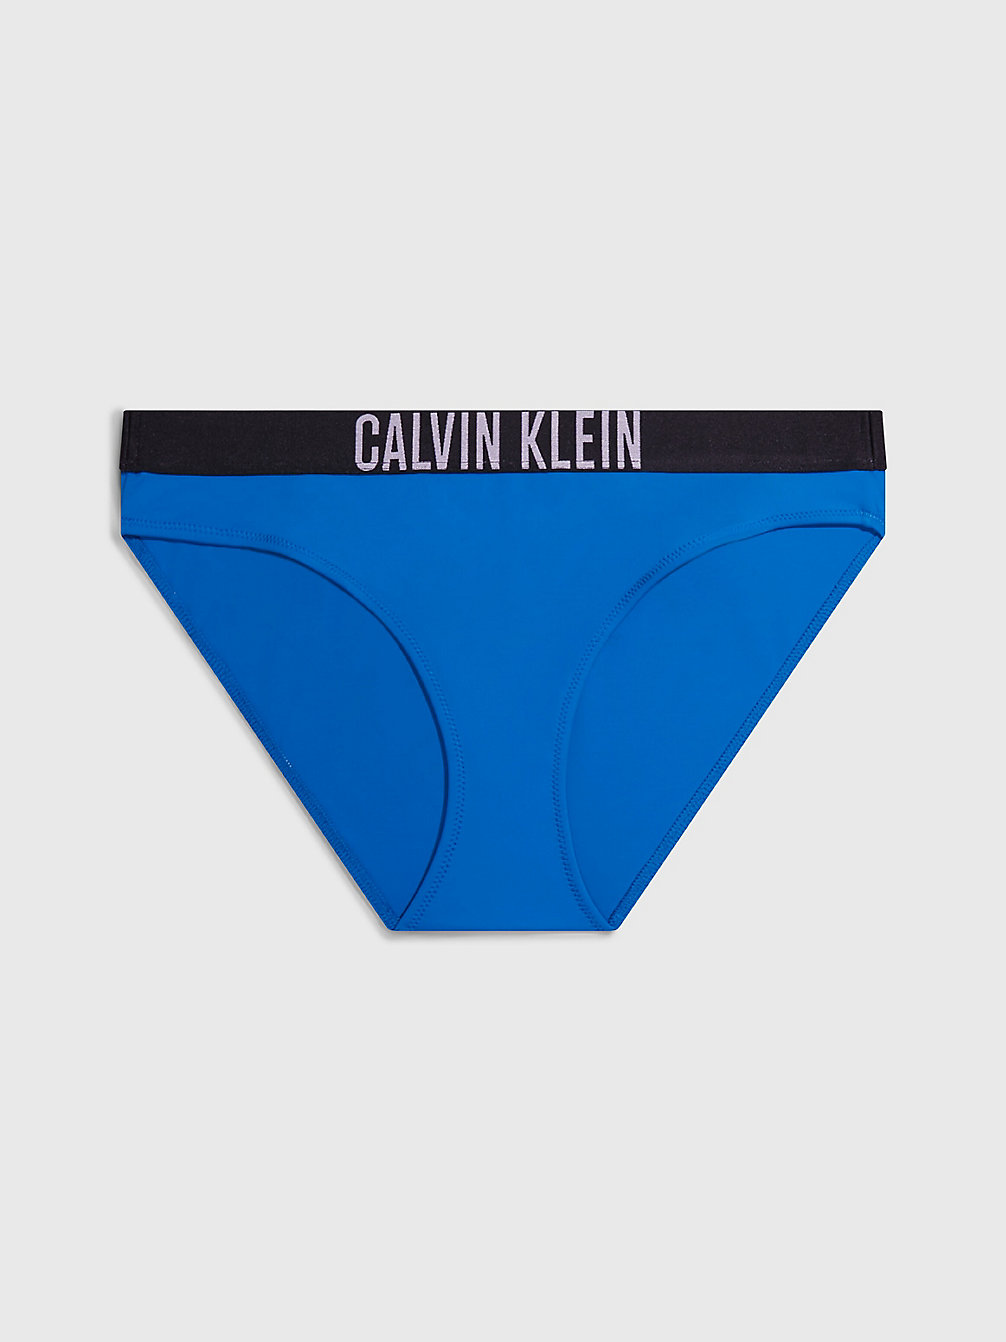 DYNAMIC BLUE > Bikinihosen – Intense Power > undefined Damen - Calvin Klein